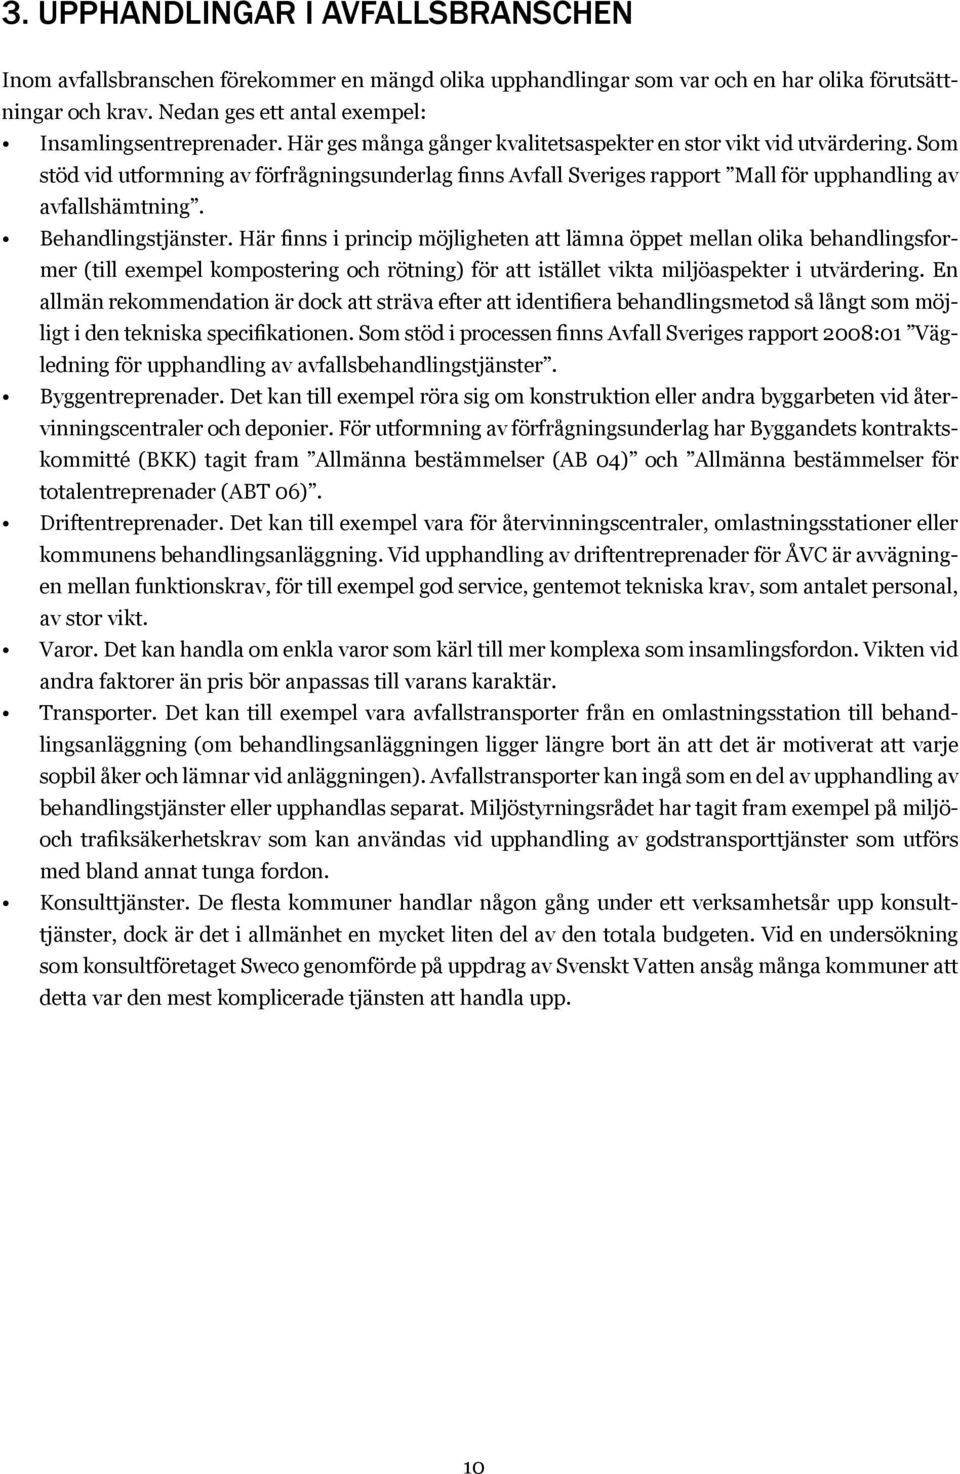 Som stöd vid utformning av förfrågningsunderlag finns Avfall Sveriges rapport Mall för upphandling av avfallshämtning. Behandlingstjänster.